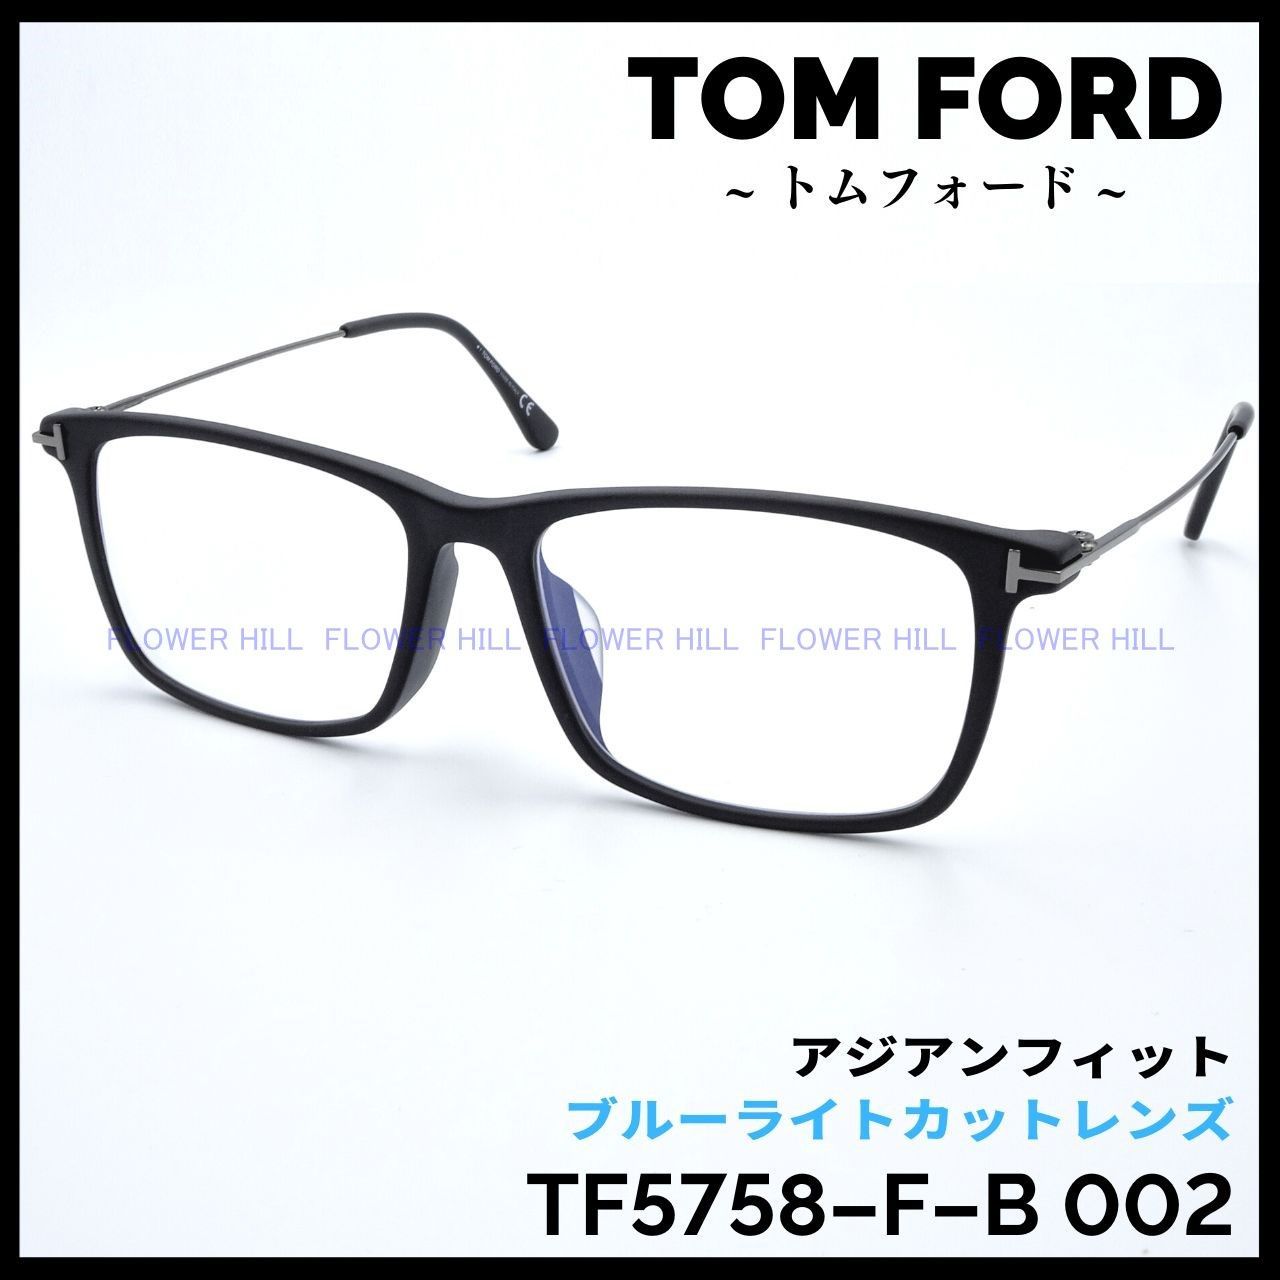 【訳あり】 トムフォード メガネ TF5758-F-B 002 アジアンフィット